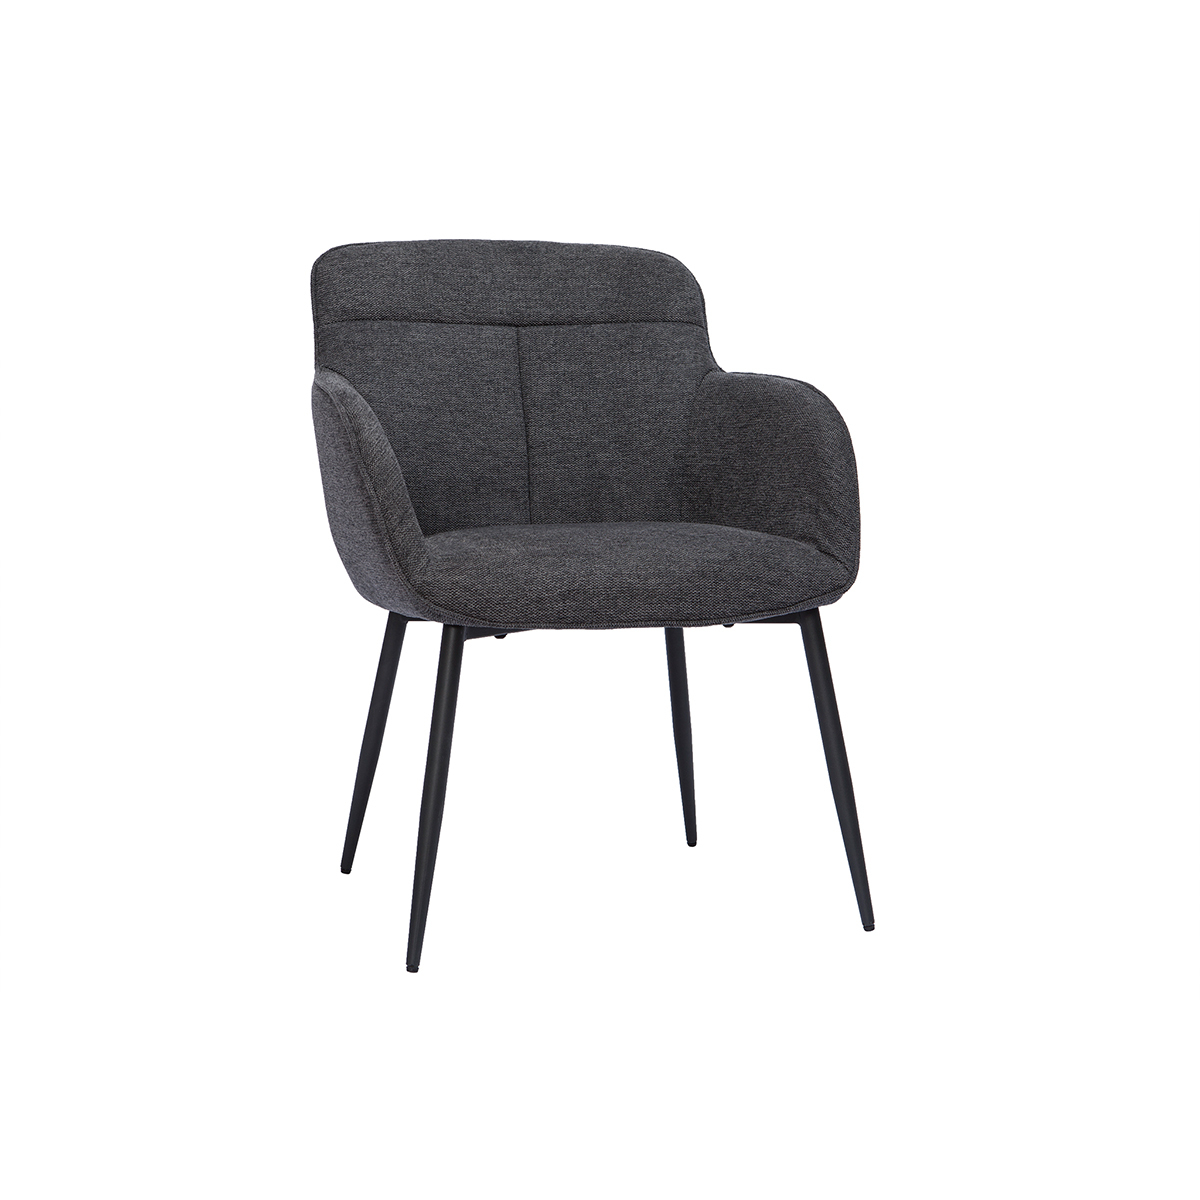 Chaise design en tissu effet velours texturé gris foncé FRIDA vue1